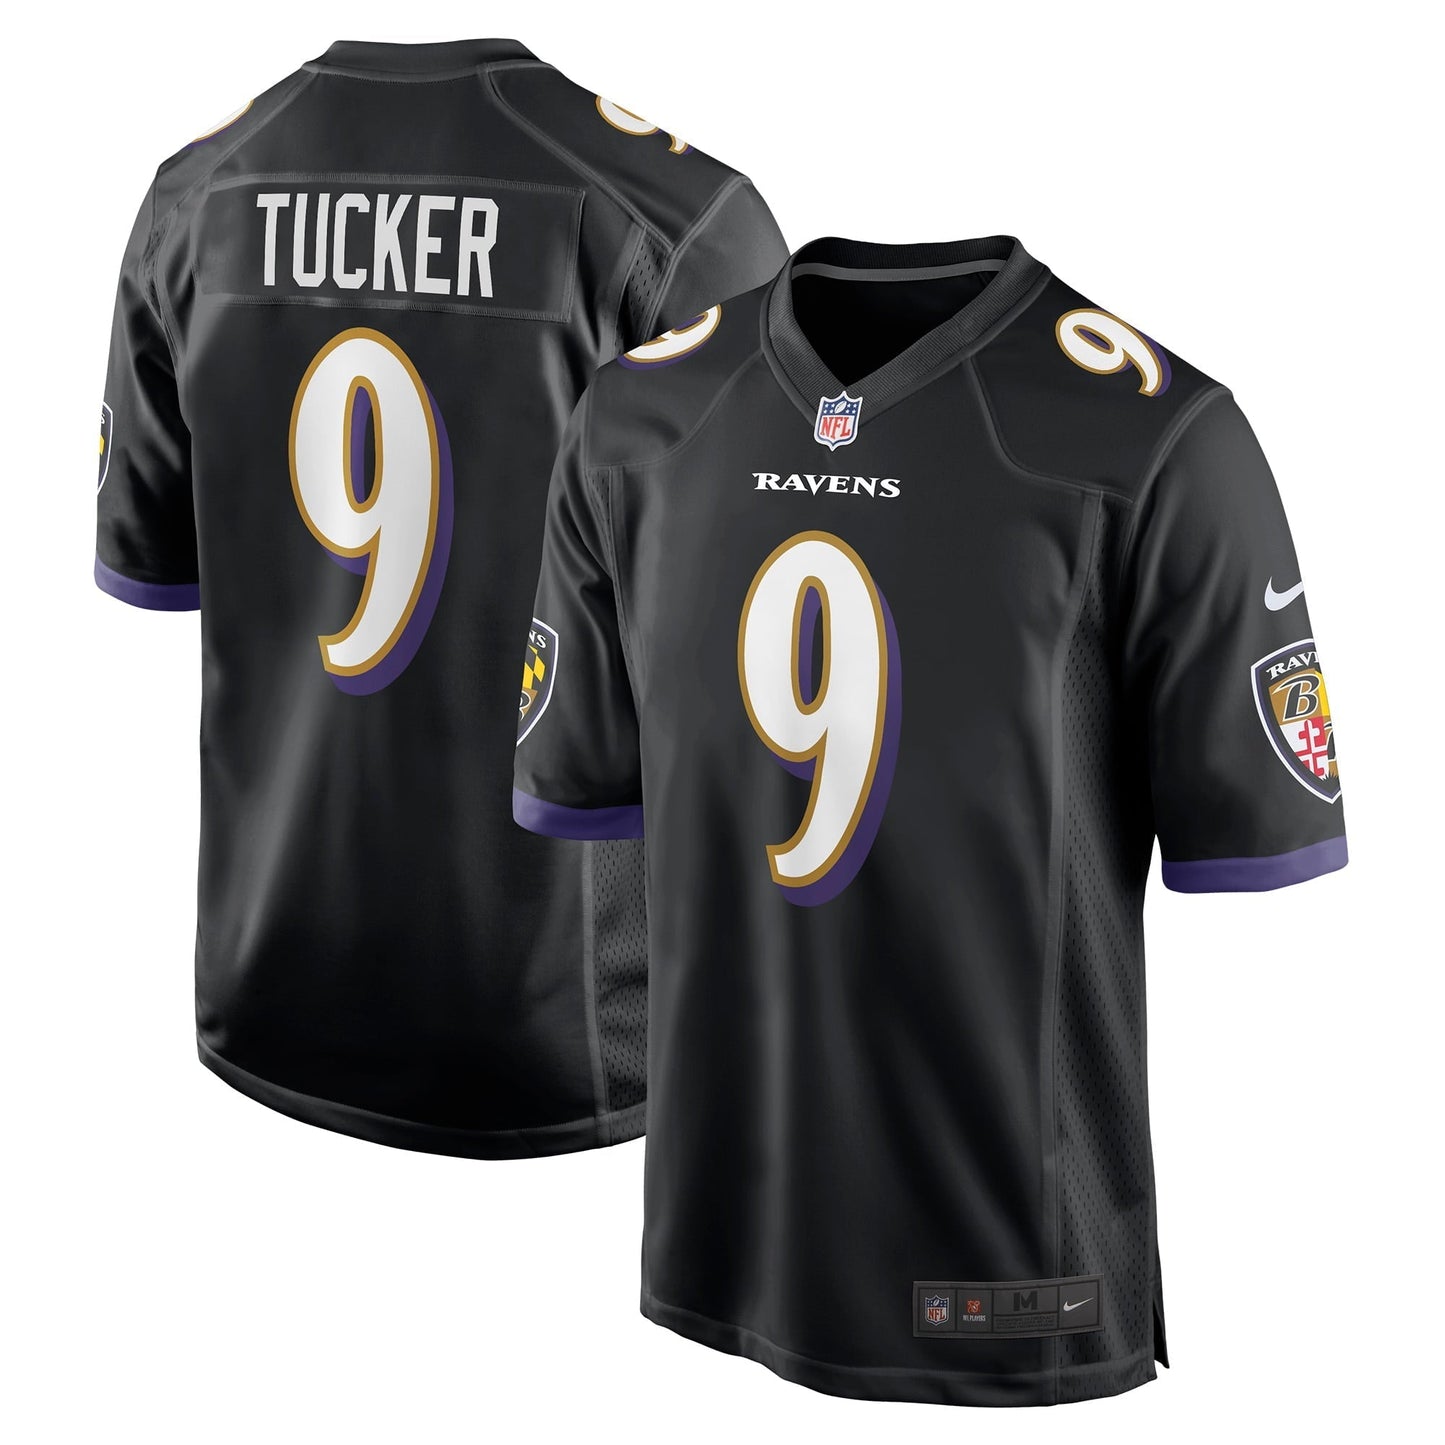 Men's Nike Justin Tucker Black Baltimore Ravens Player Game Jersey